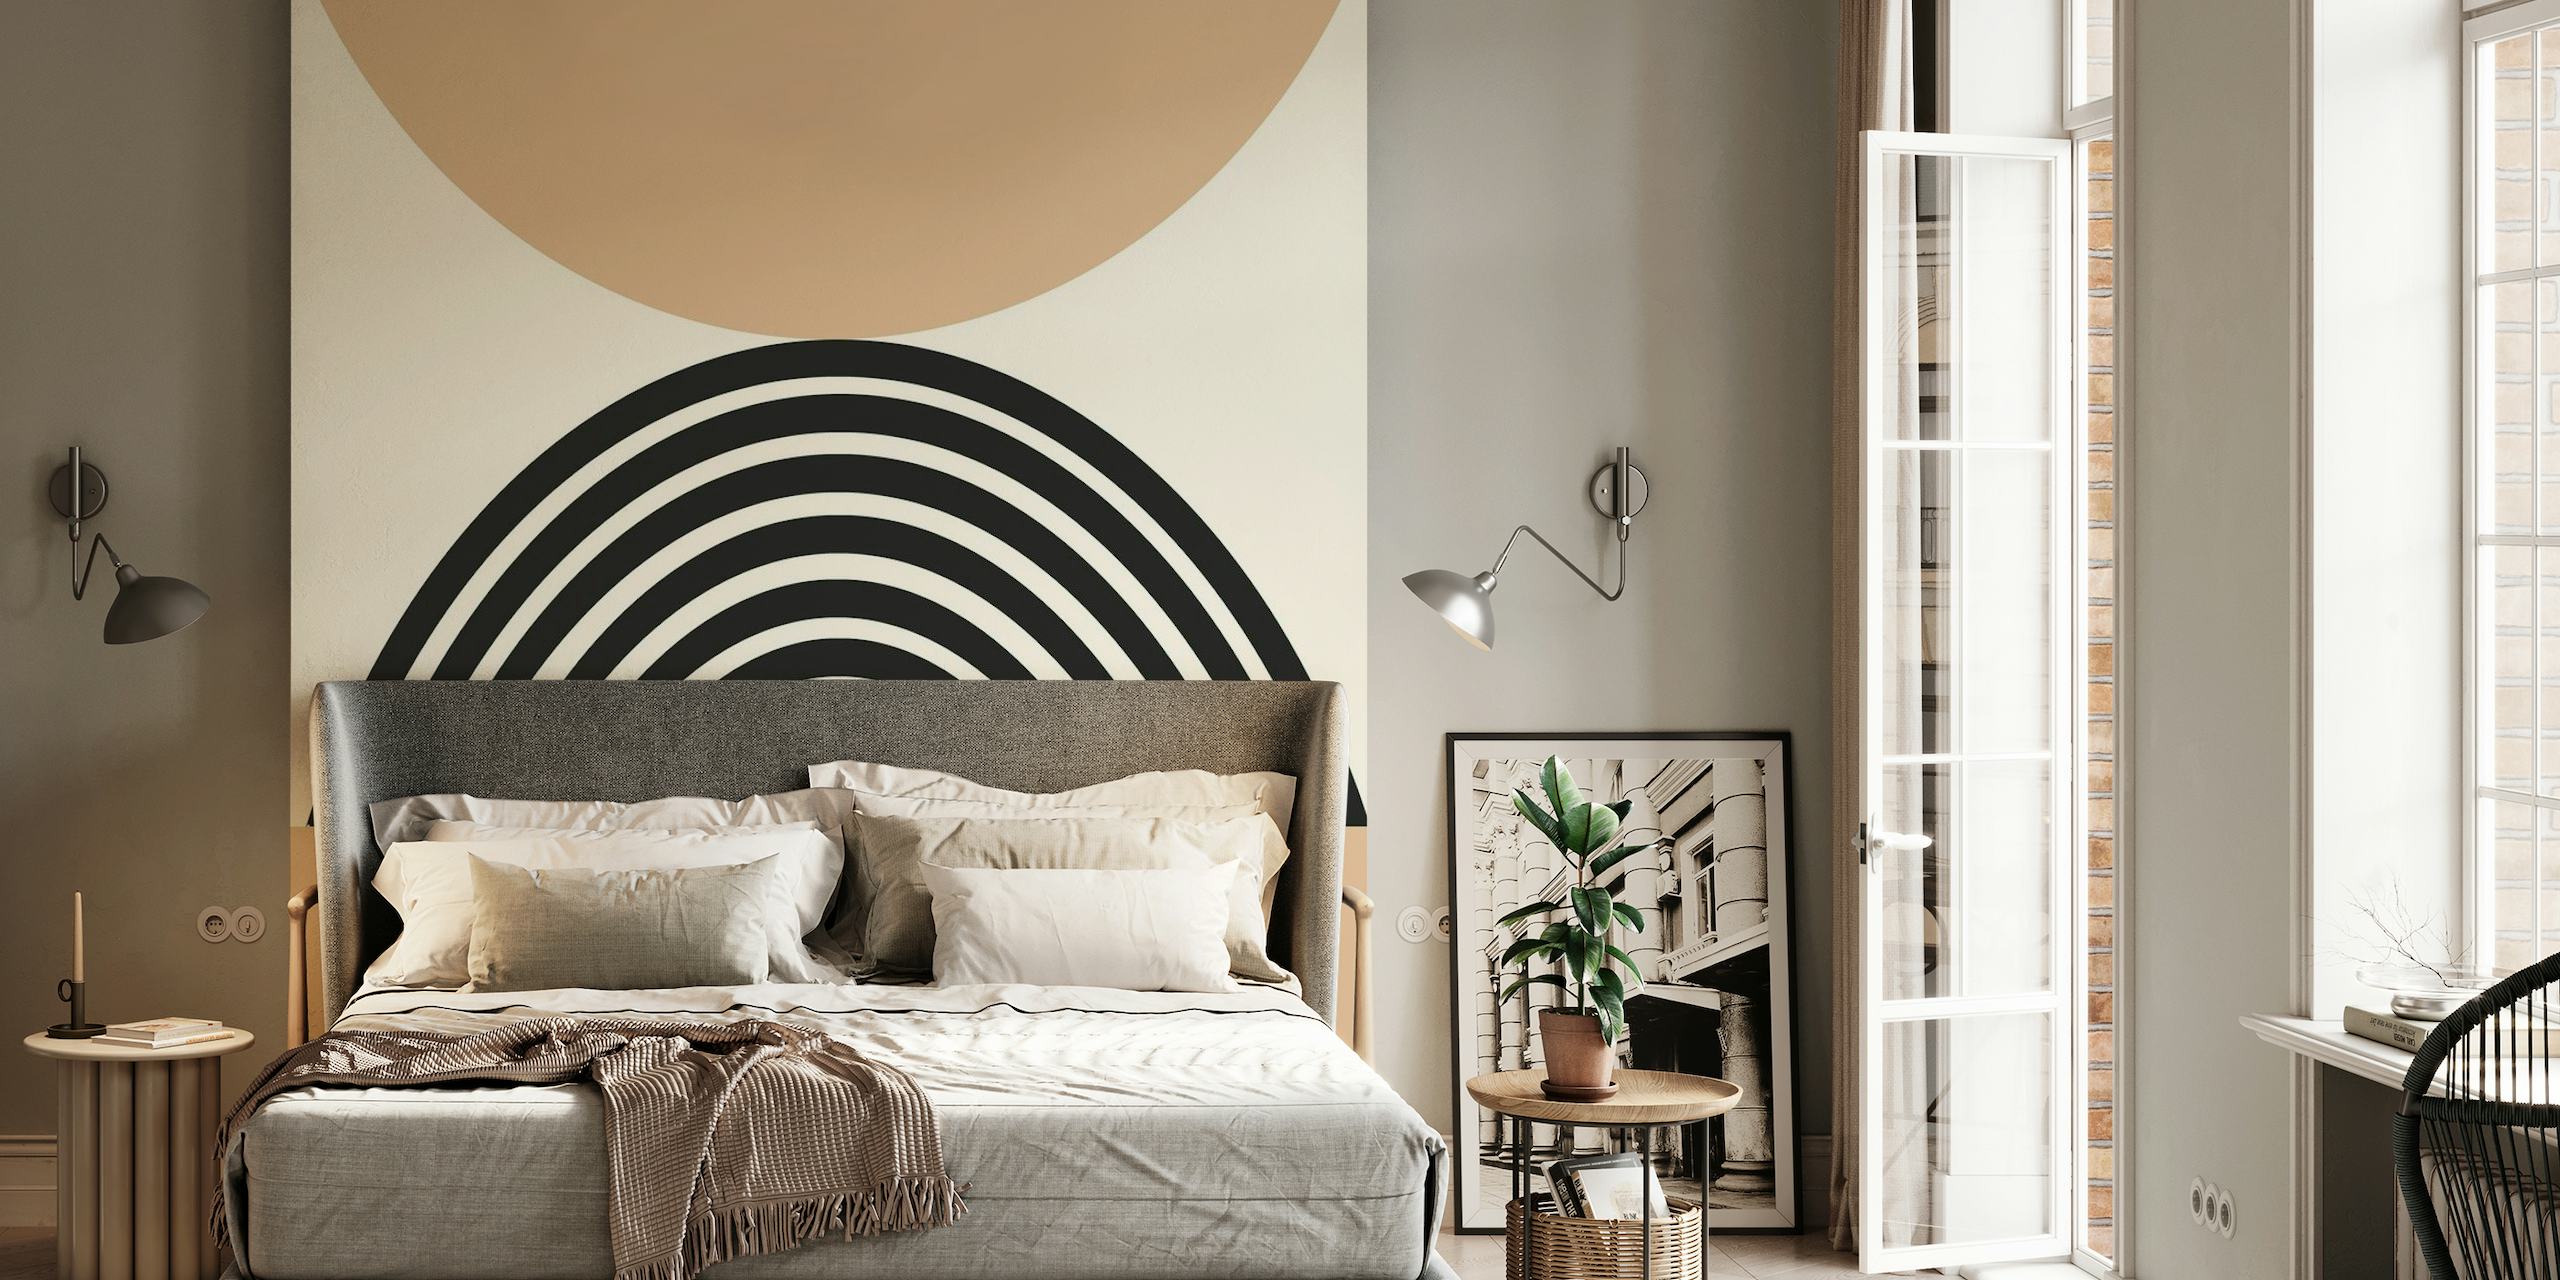 Décoration murale minimaliste en arc de soleil beige et noir